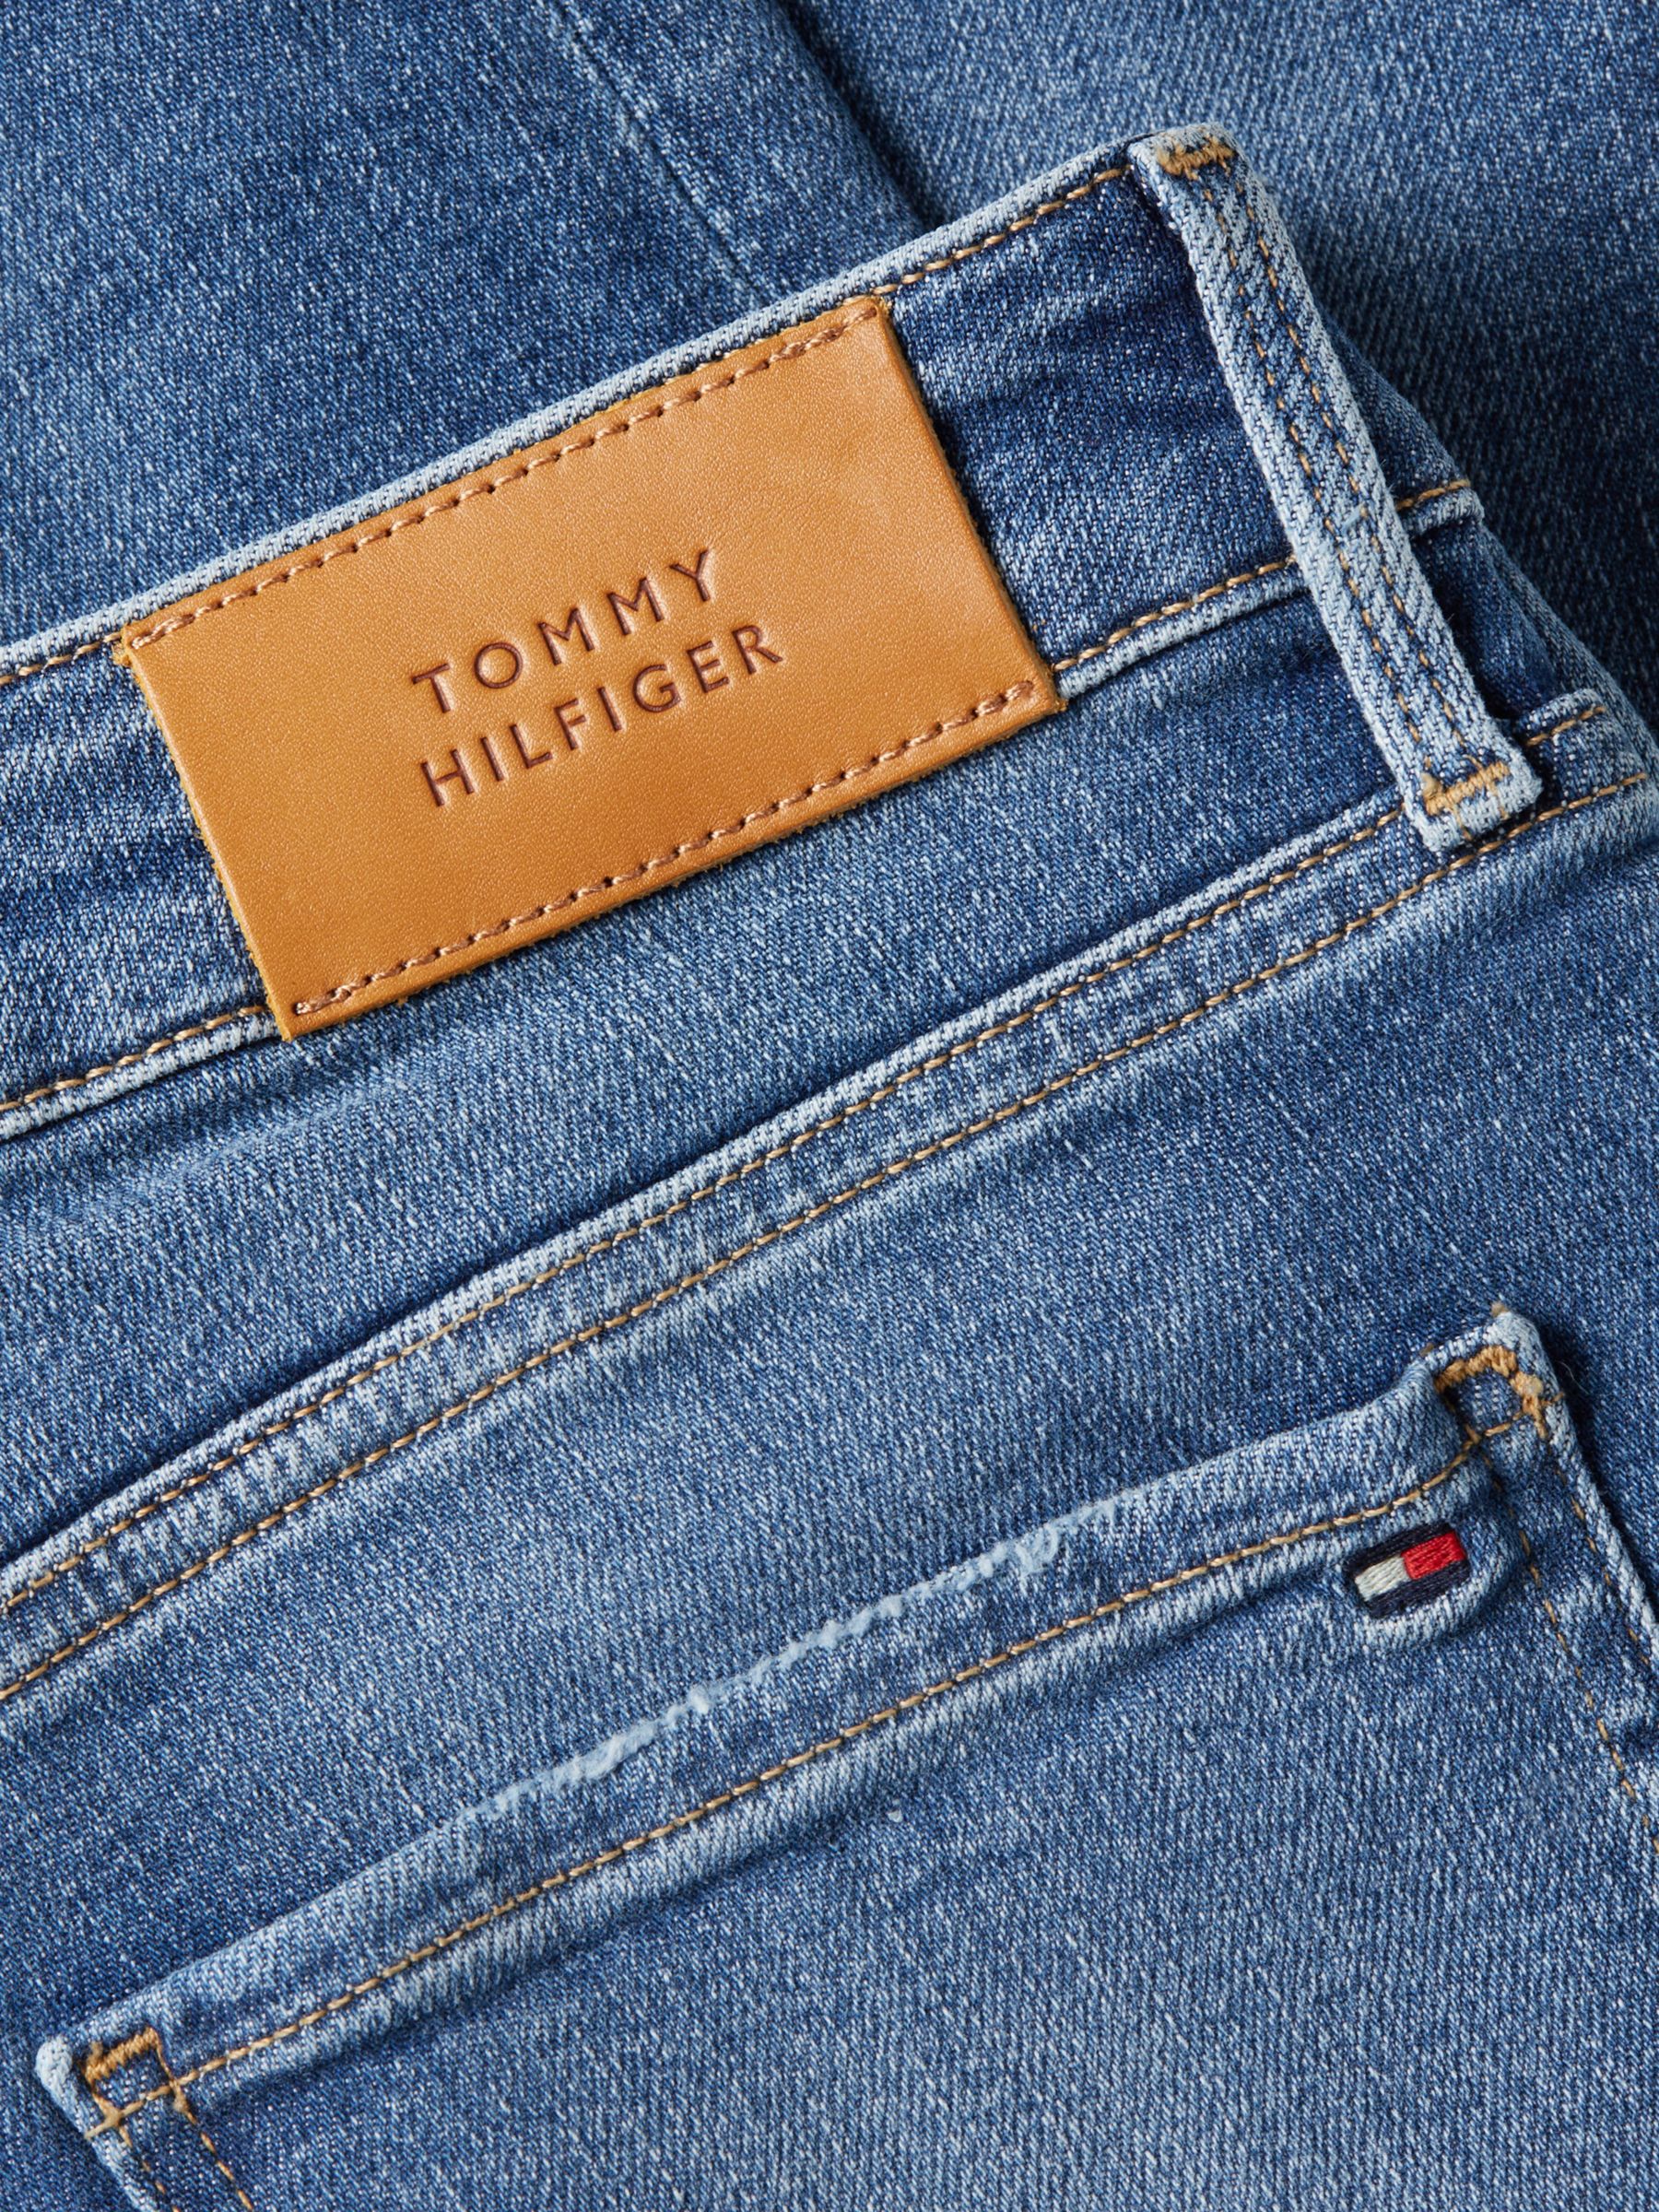 Lewis Skinny Partners & Jeans, Leo Hilfiger John Tommy Harlem Rise High Curve at